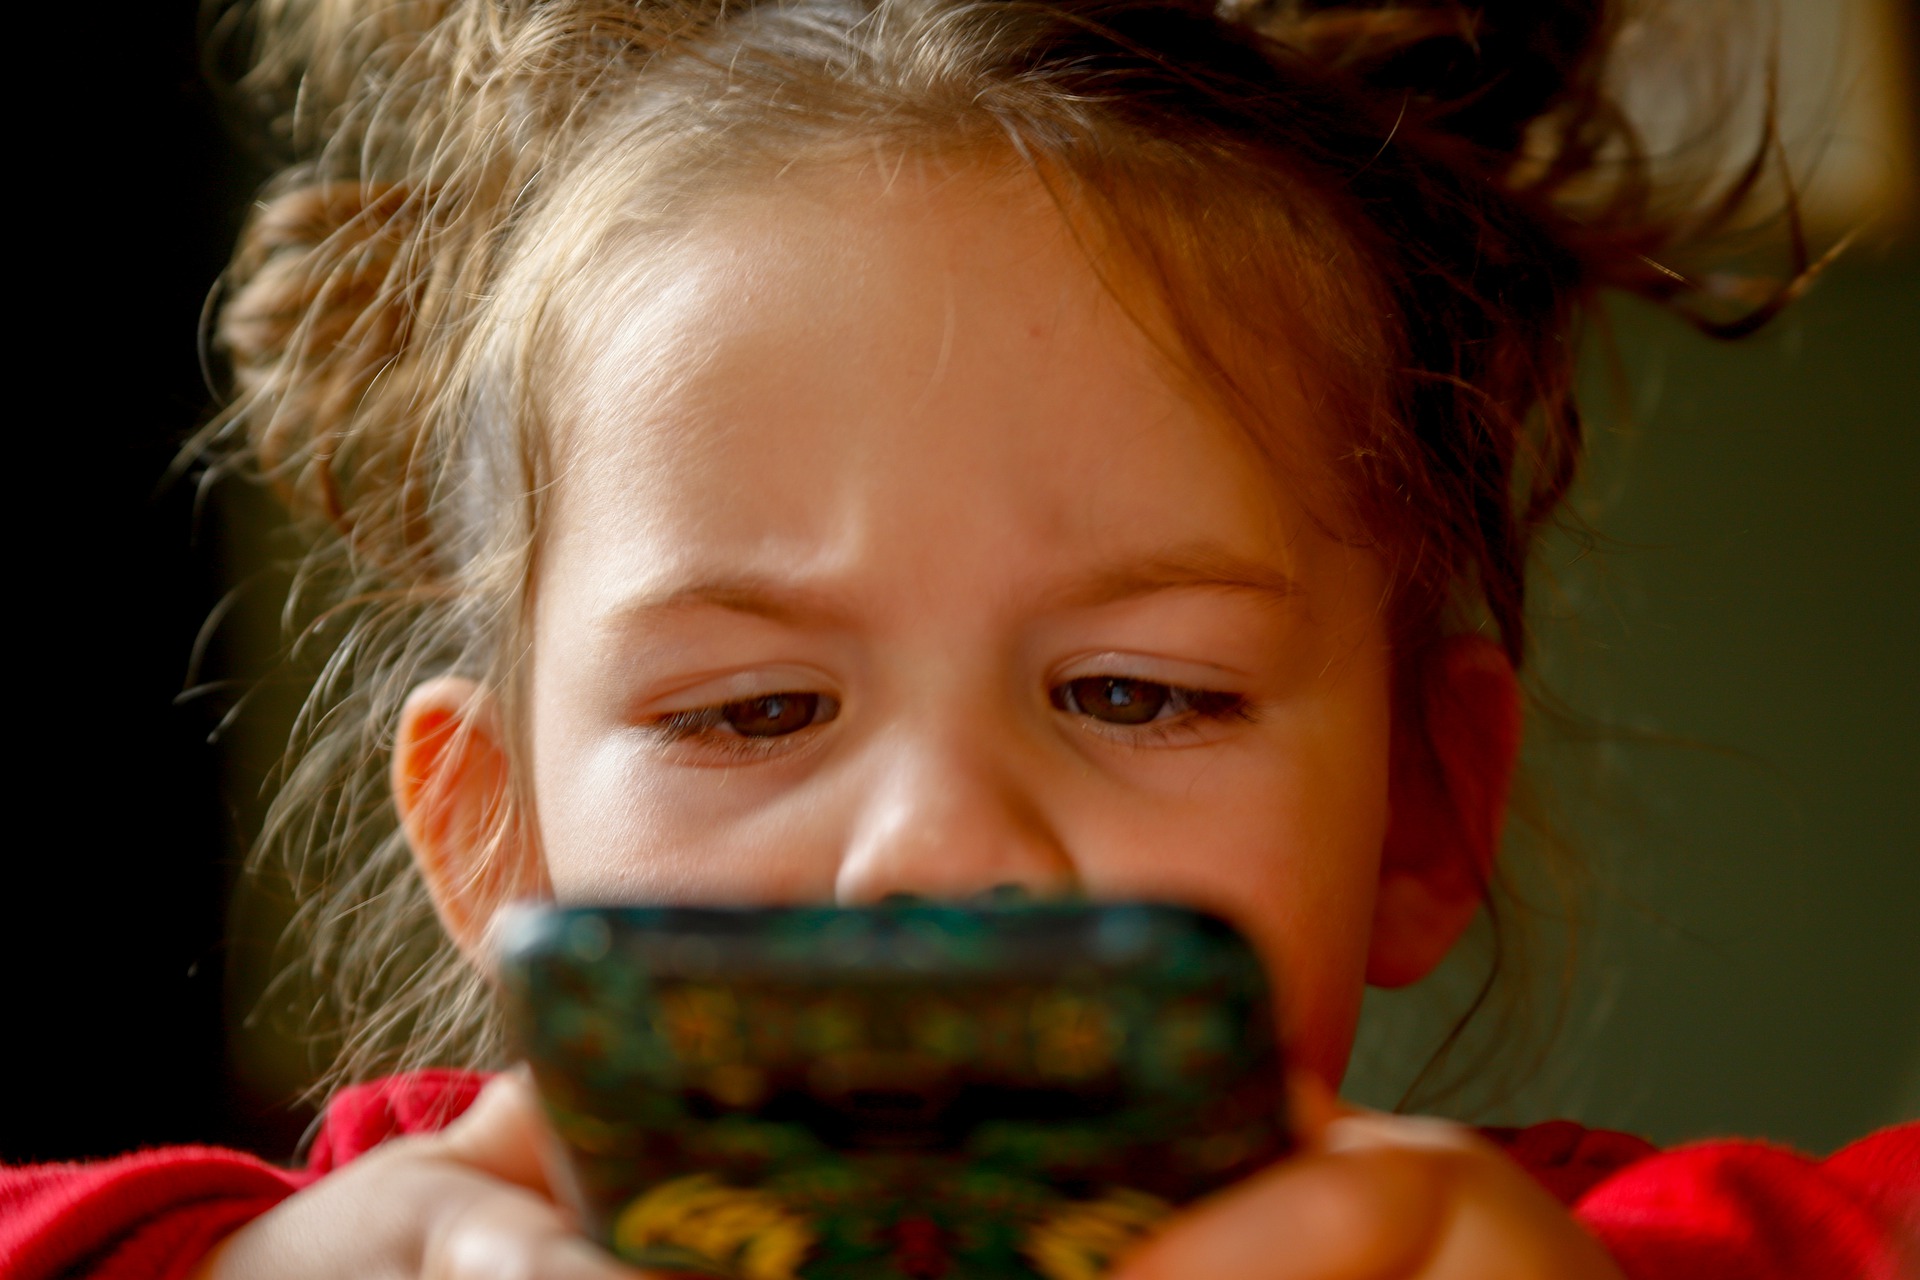 Telefonul, tableta, televizorul si alte ecrane digitale- cum afecteaza acestea ochii copilului?